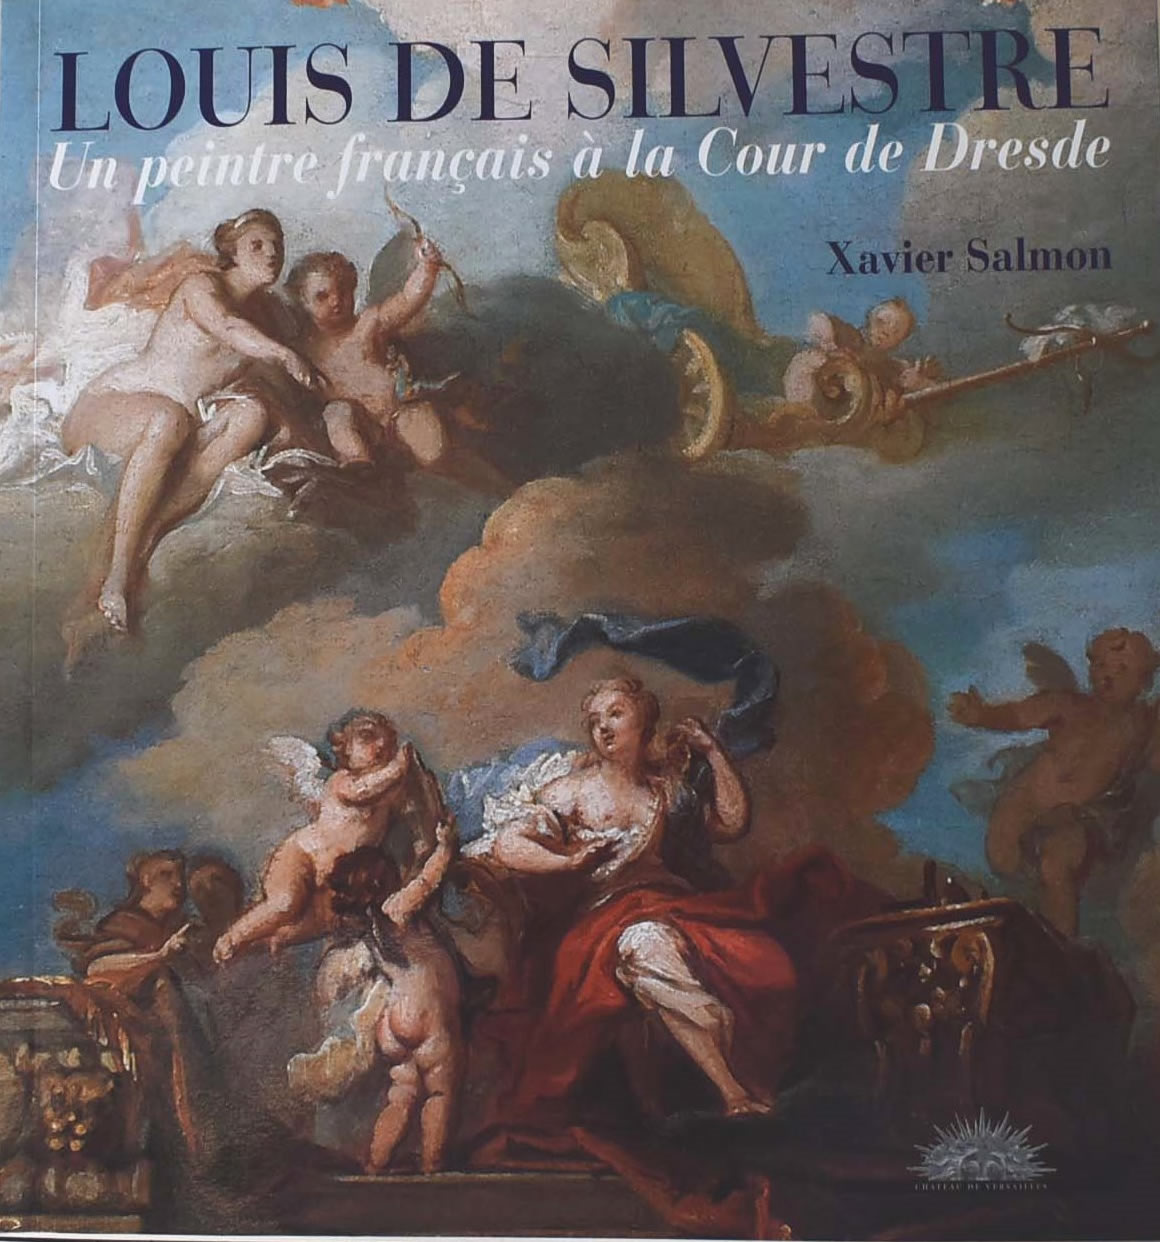  Louis de Silvestre, Un peintre français à la Cour de Dresde - Document 1